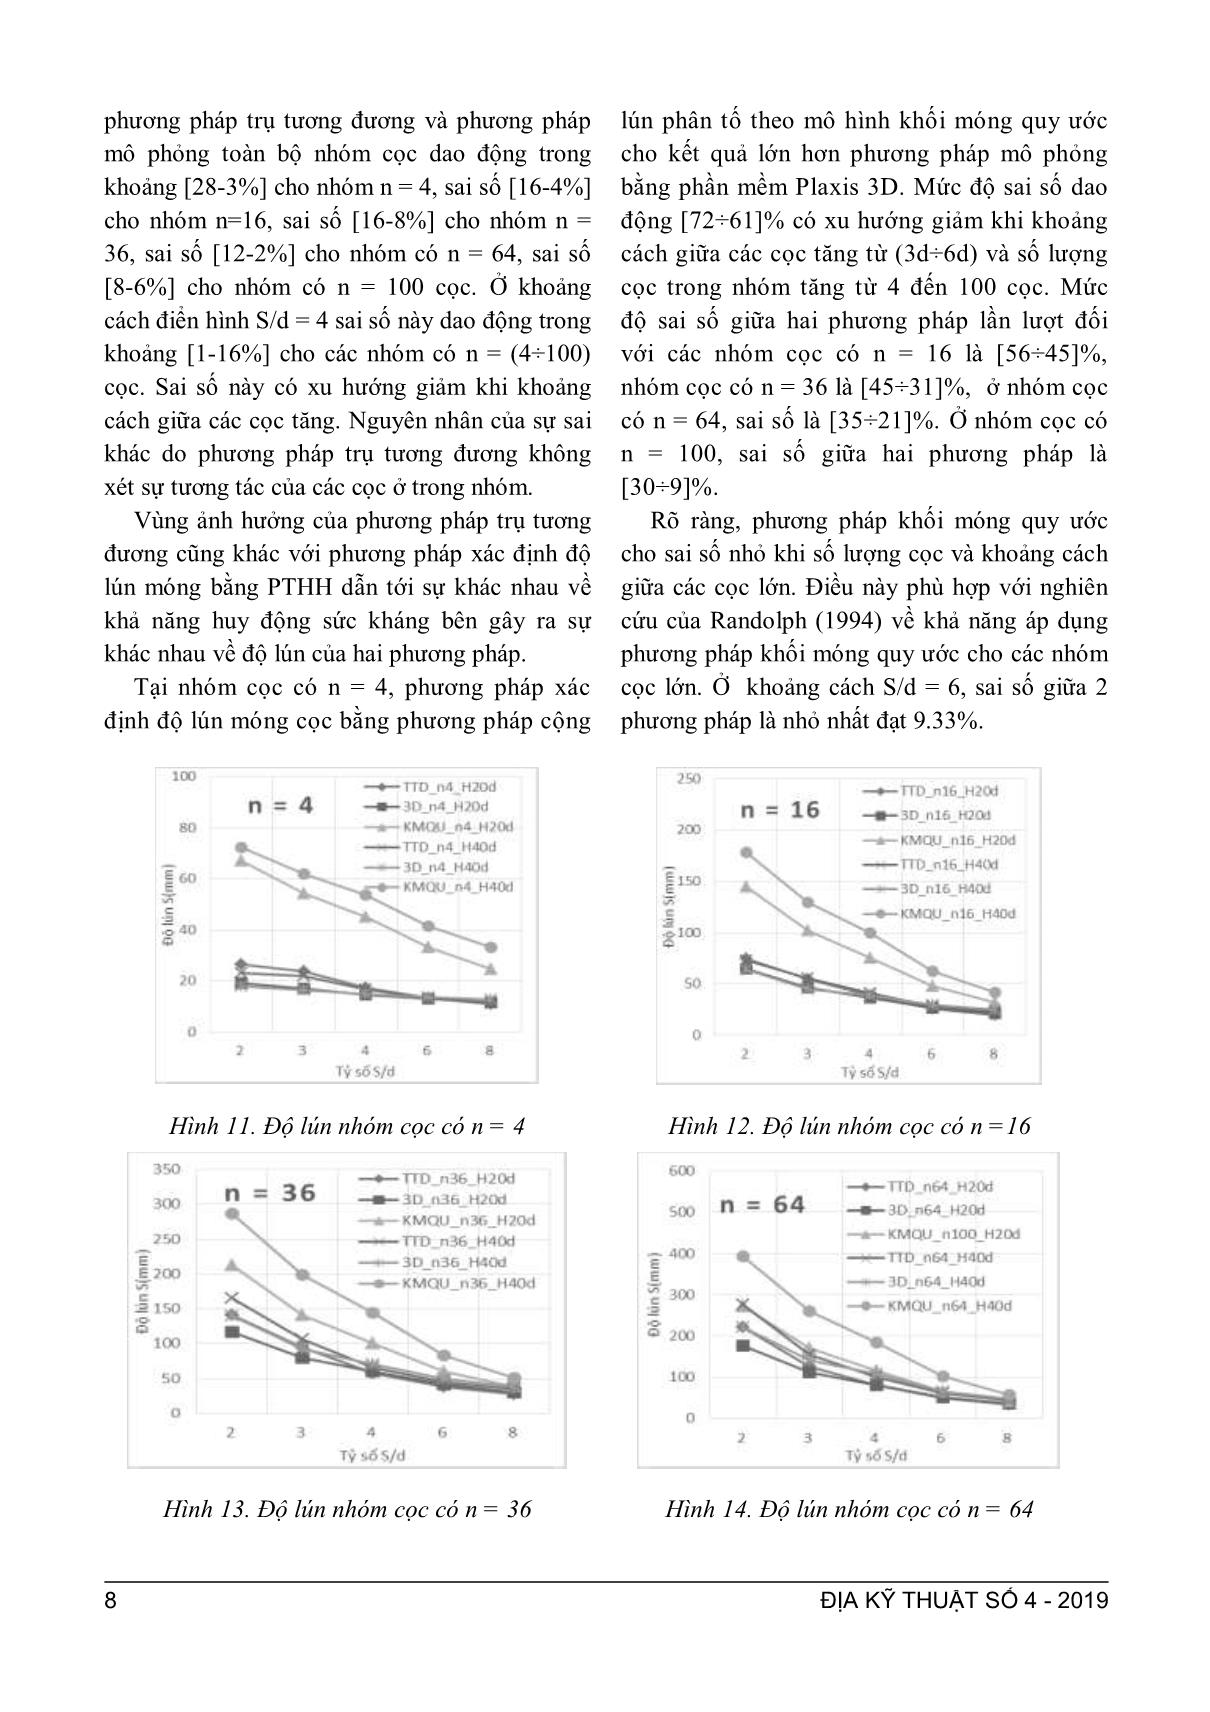 Phân tích các phương pháp ước lượng độ lún của nhóm cọc trang 5